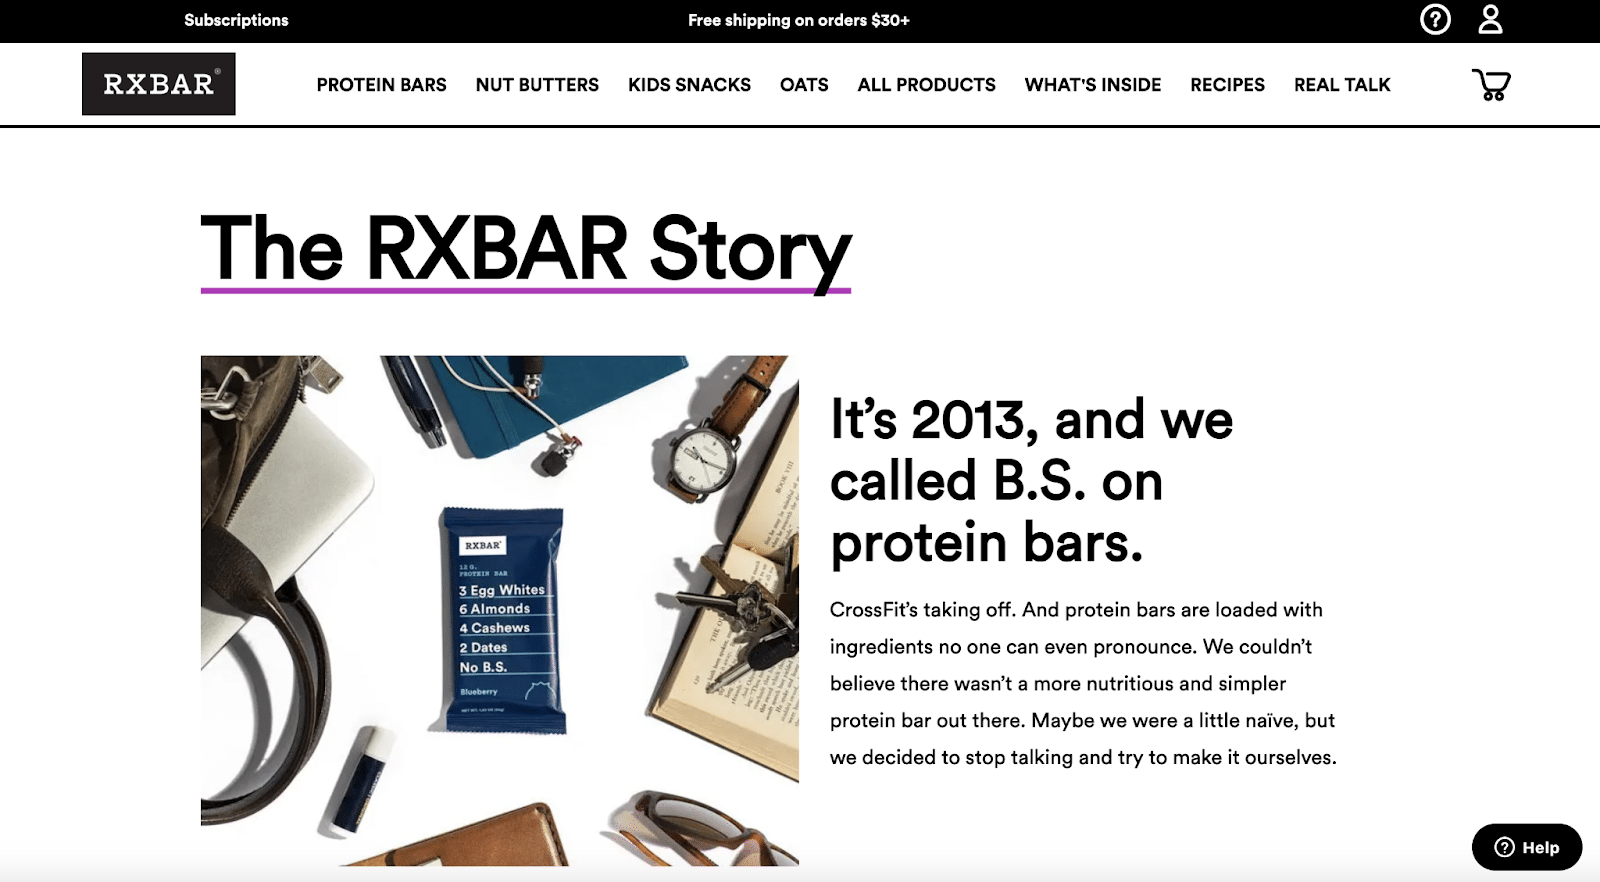 Page À propos de nous de RXBAR.